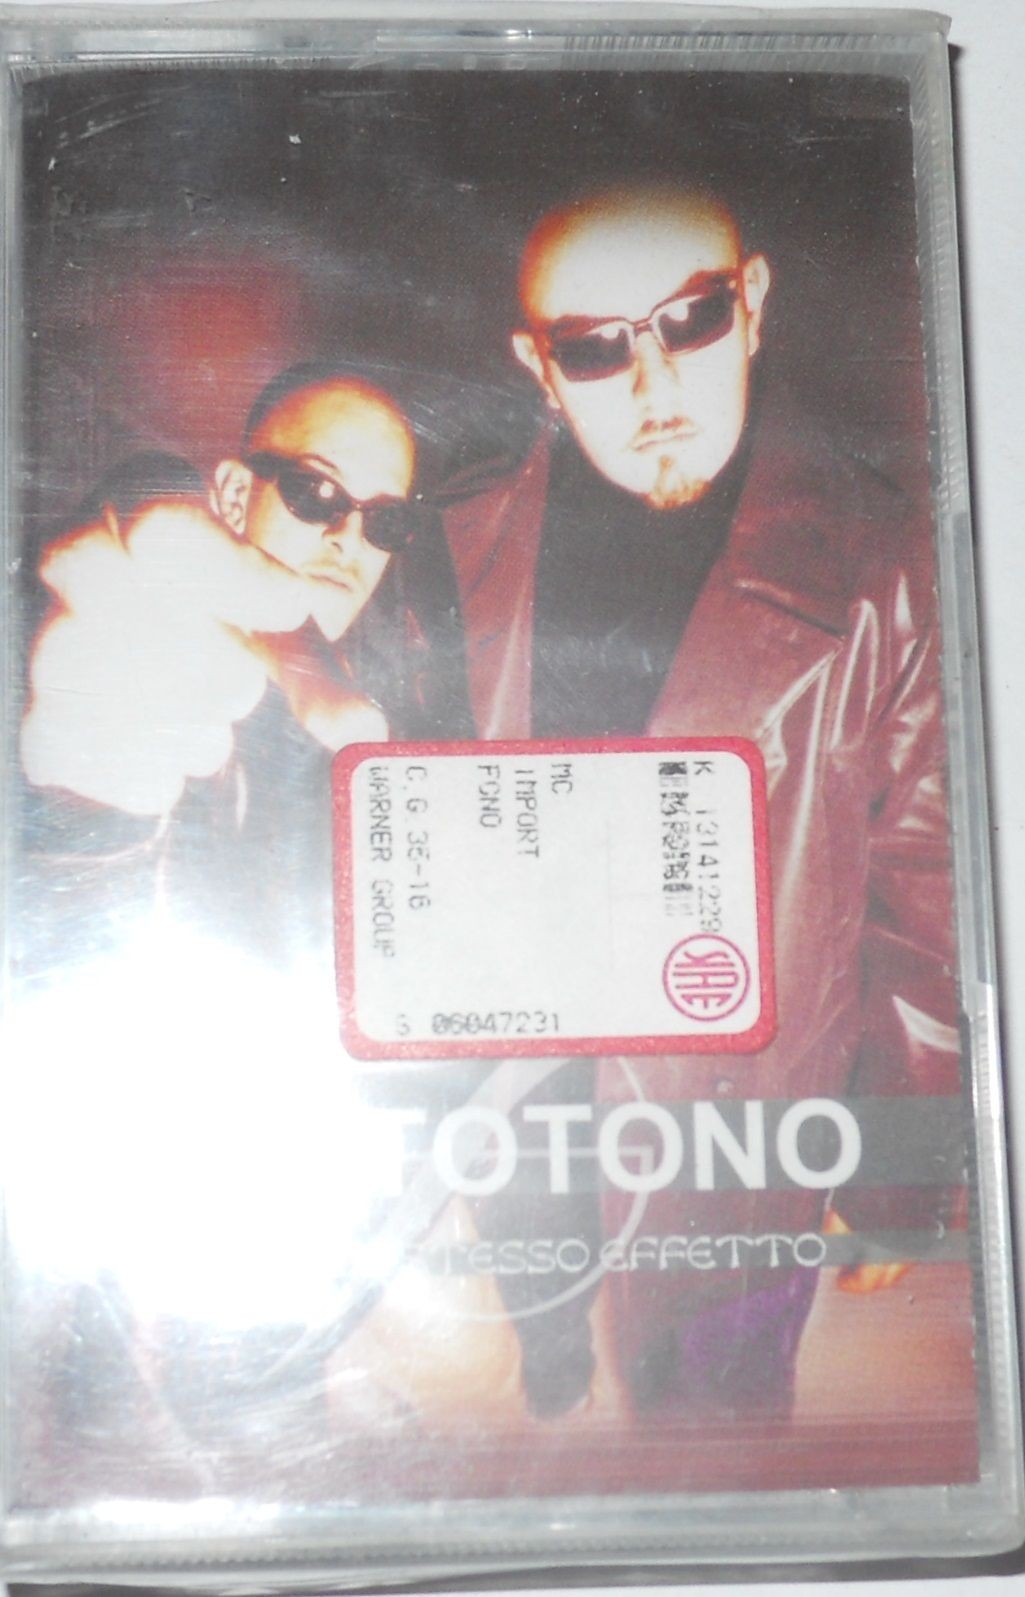 SOTTOTONO - SOTTO LO STESSO EFFETTO (1999) - MC..